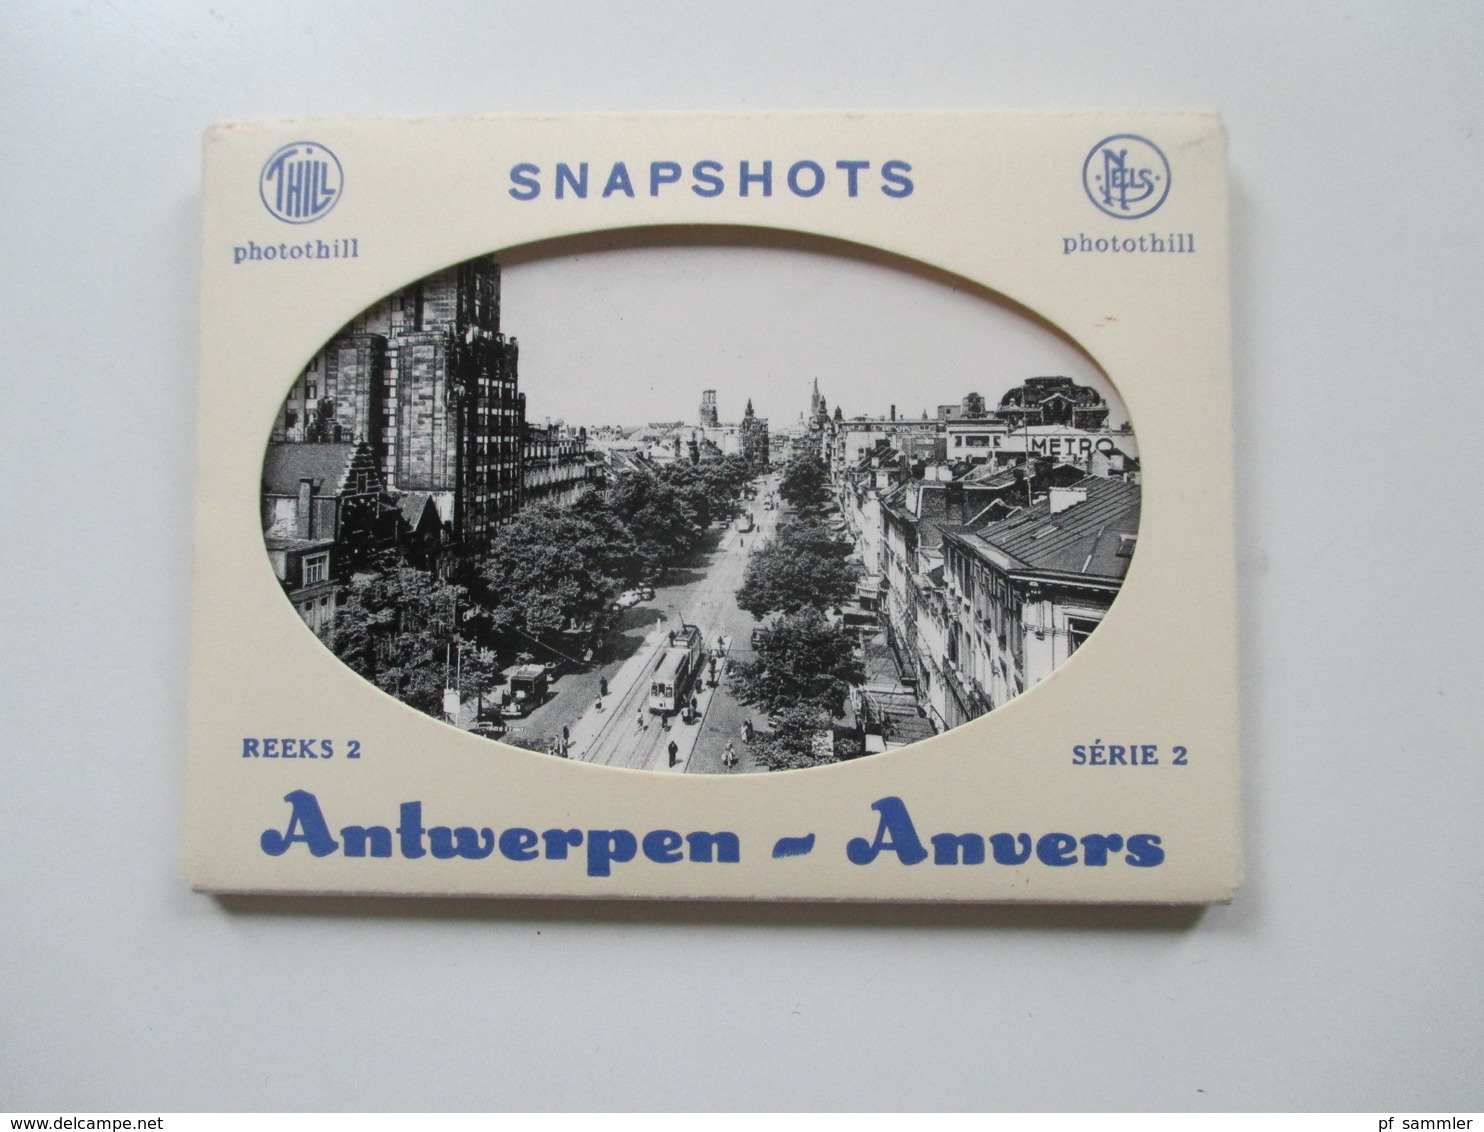 40 Leporellos kleine Fotos 1940 / 50er Jahre! Deutschland / Italien / Österreich / Luxemburg usw. Interessanter Posten!!